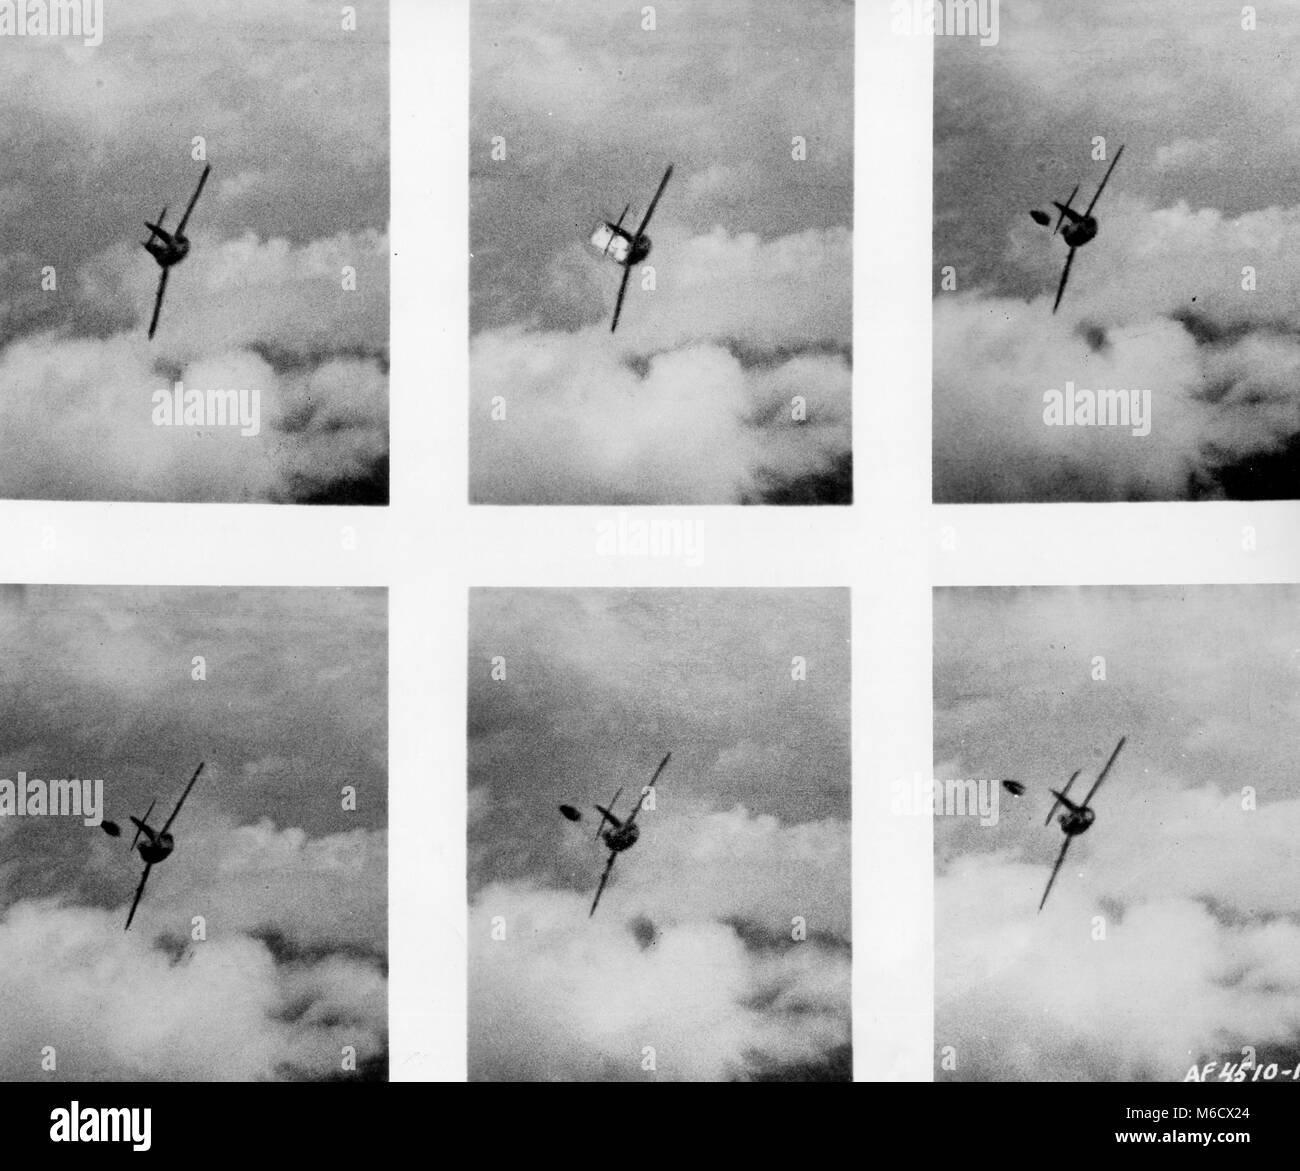 Des photos, prises par la caméra Canon d'une U.S. Air Force F-86 piloté par Slt Edwin E. Aldrin, 'buzz' montrent un MiG-15 communiste abandon pilote son avion après qu'il avait été frappé par le feu de l'Sabre. La Corée, le 14 mai 1953. Banque D'Images